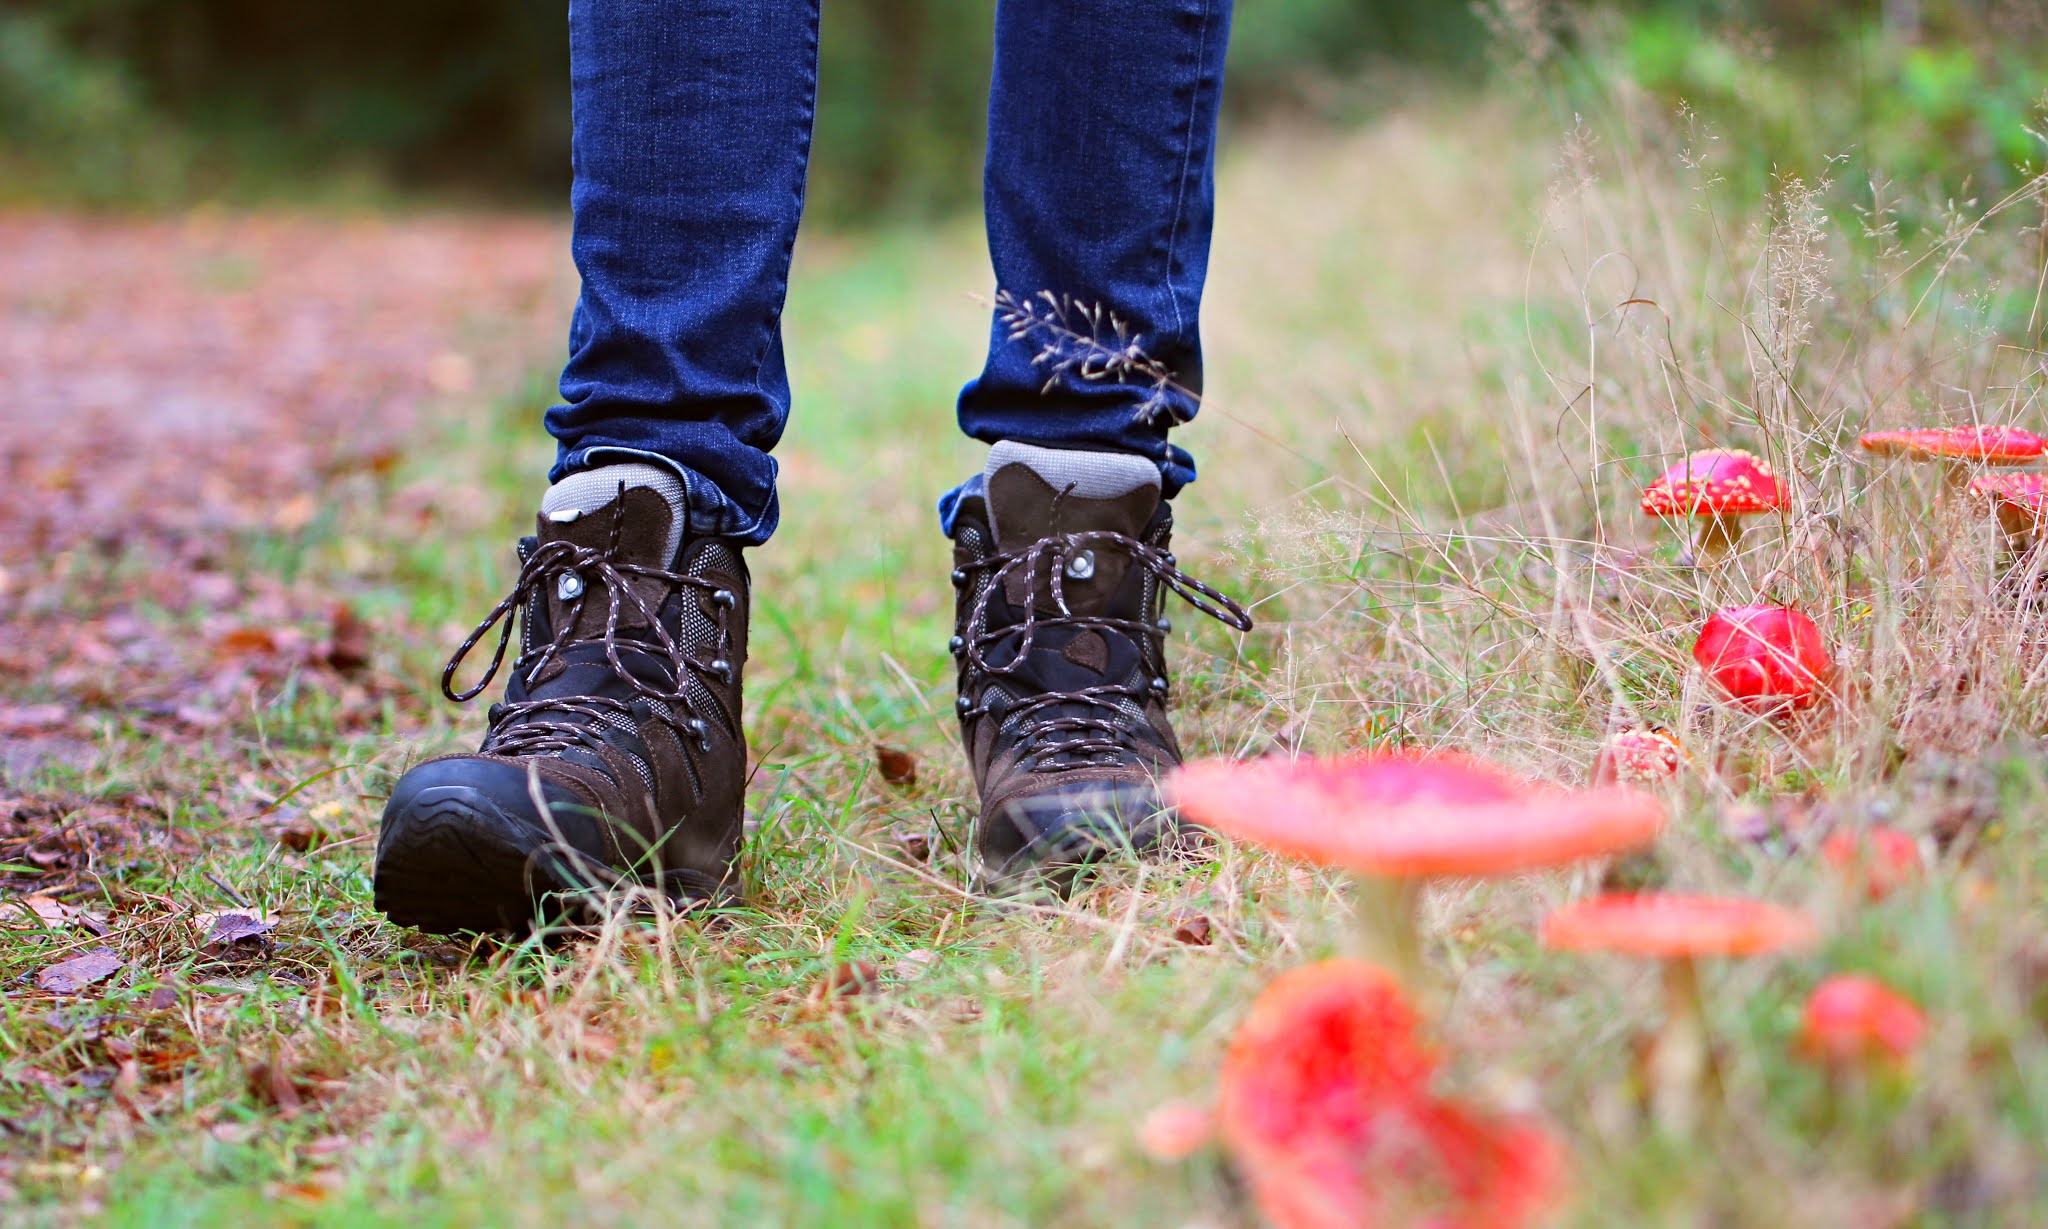 Nieuwe wandelschoenen kopen: met deze tips weet je waar je moet letten